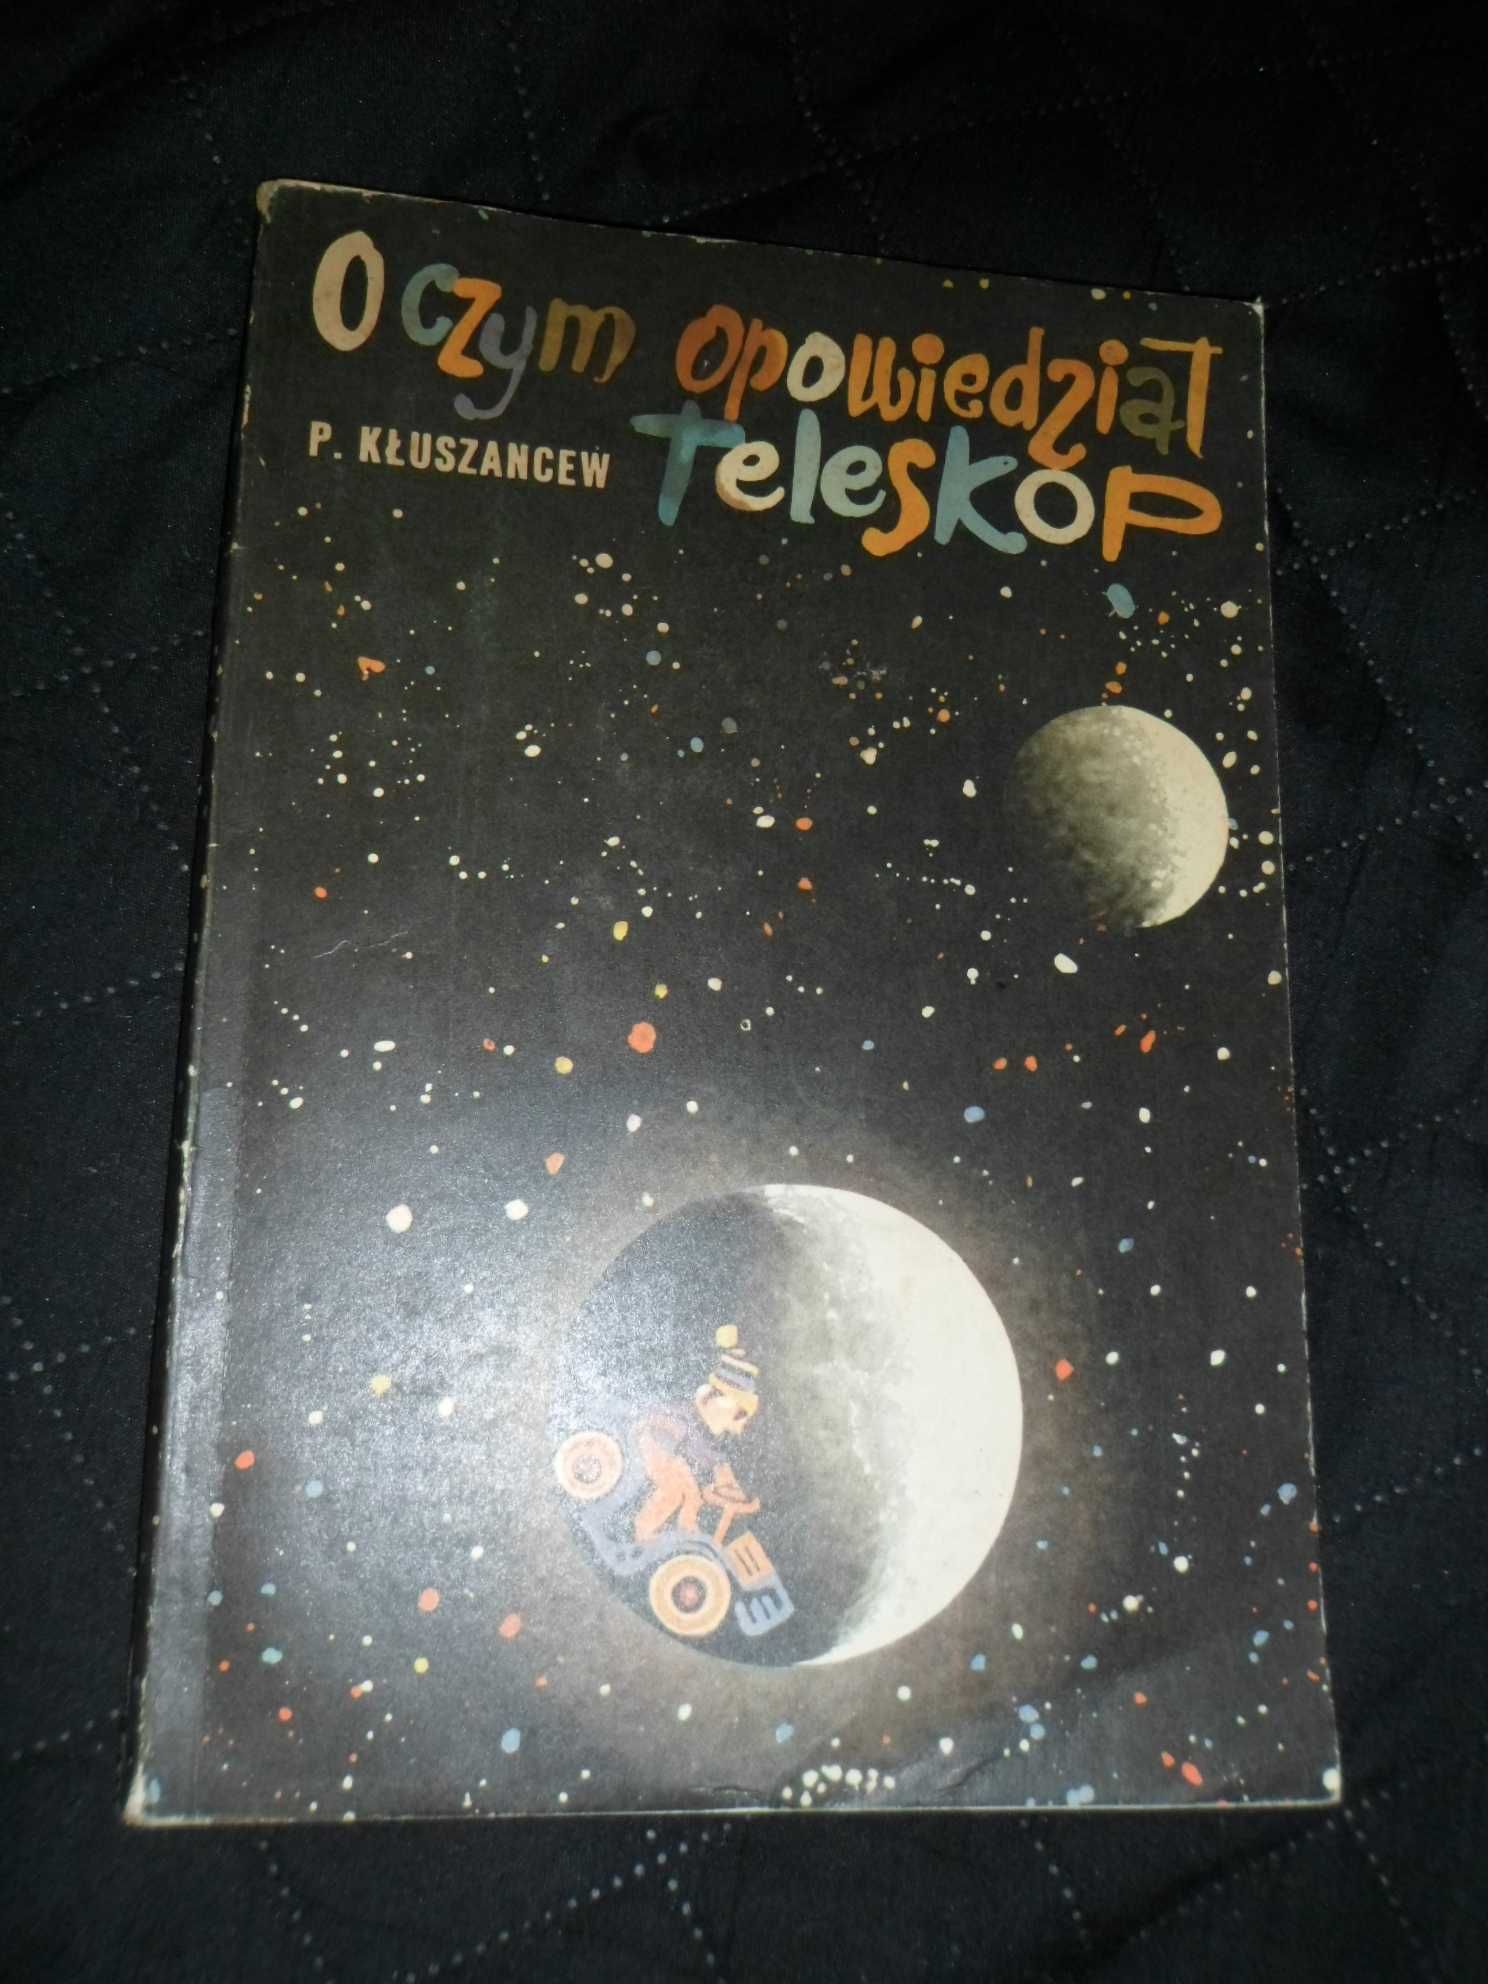 P. Kłuszancew - O czym opowiedział teleskop